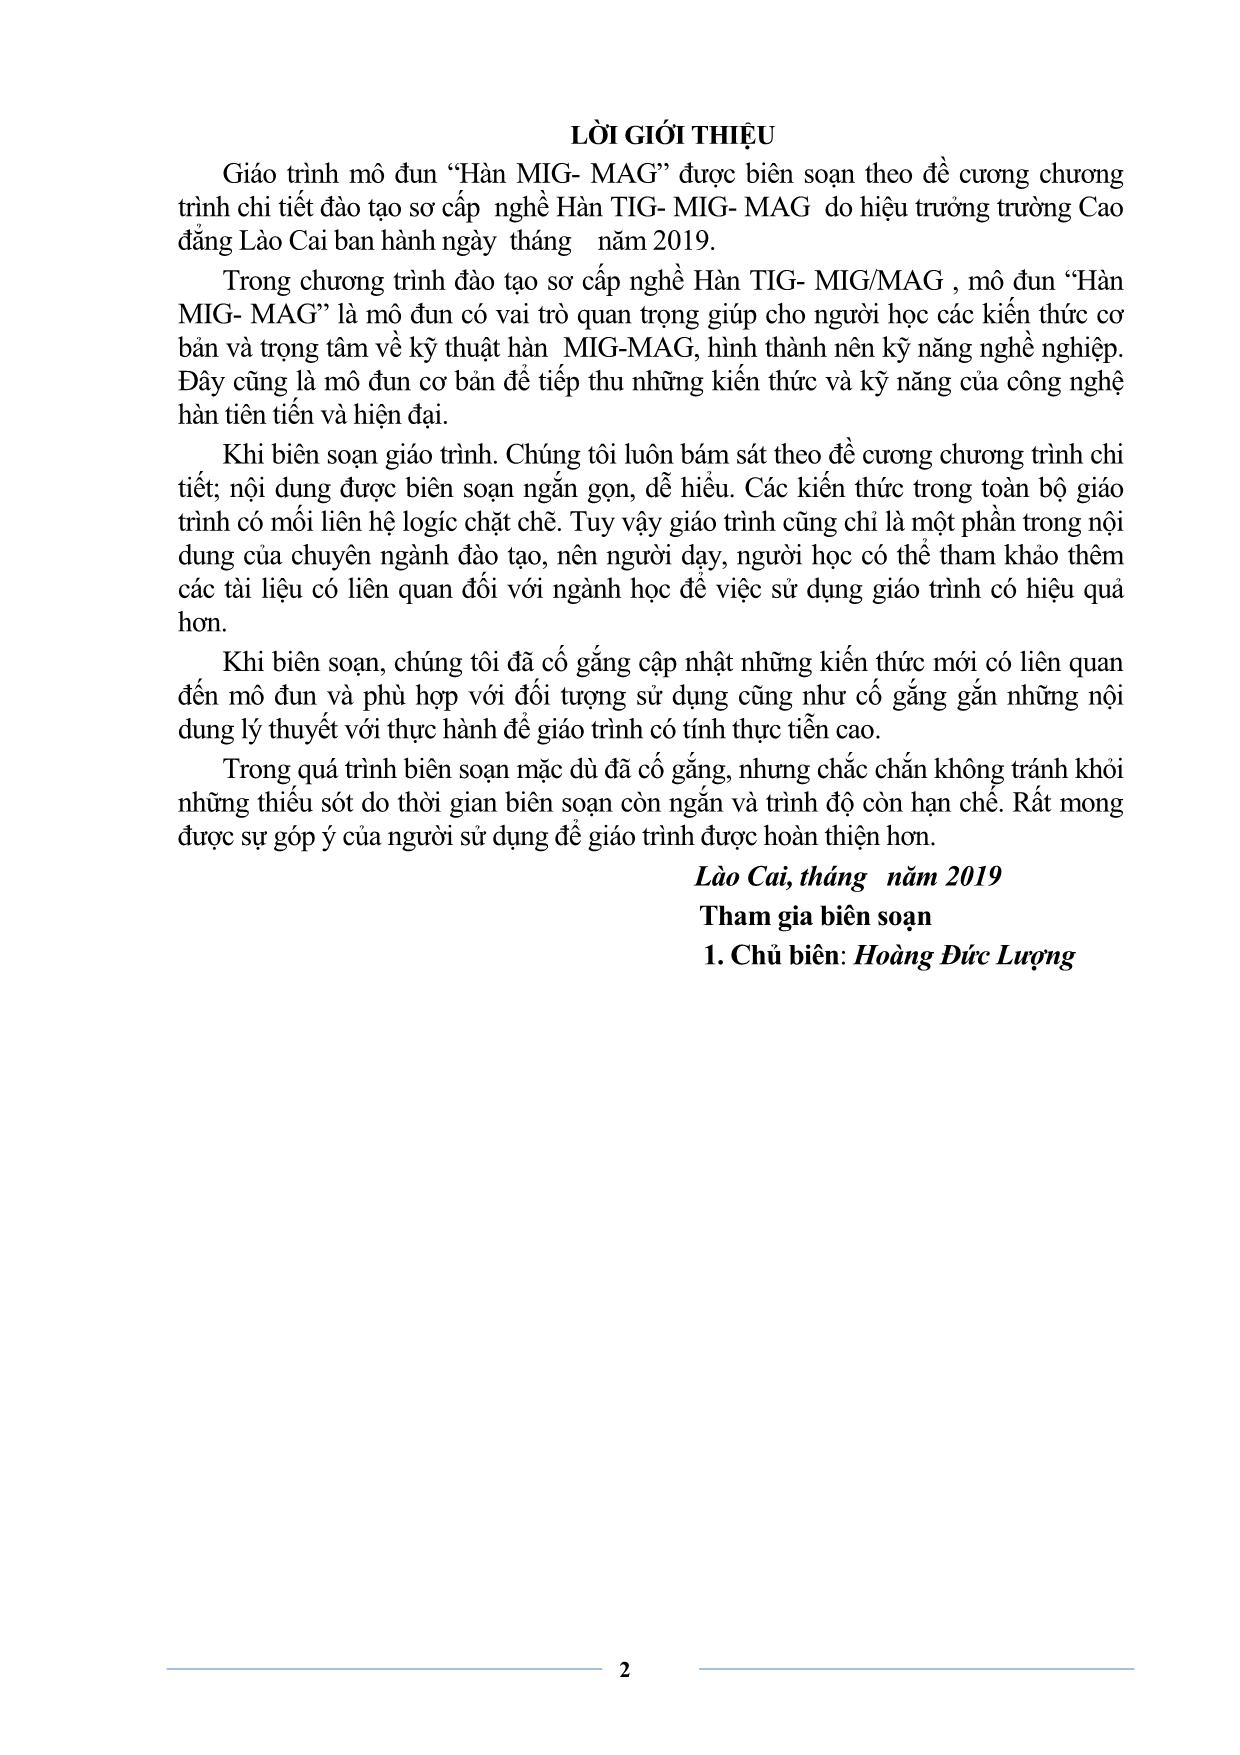 Giáo trình sơ cấp Hàn MIG-MAG trang 4